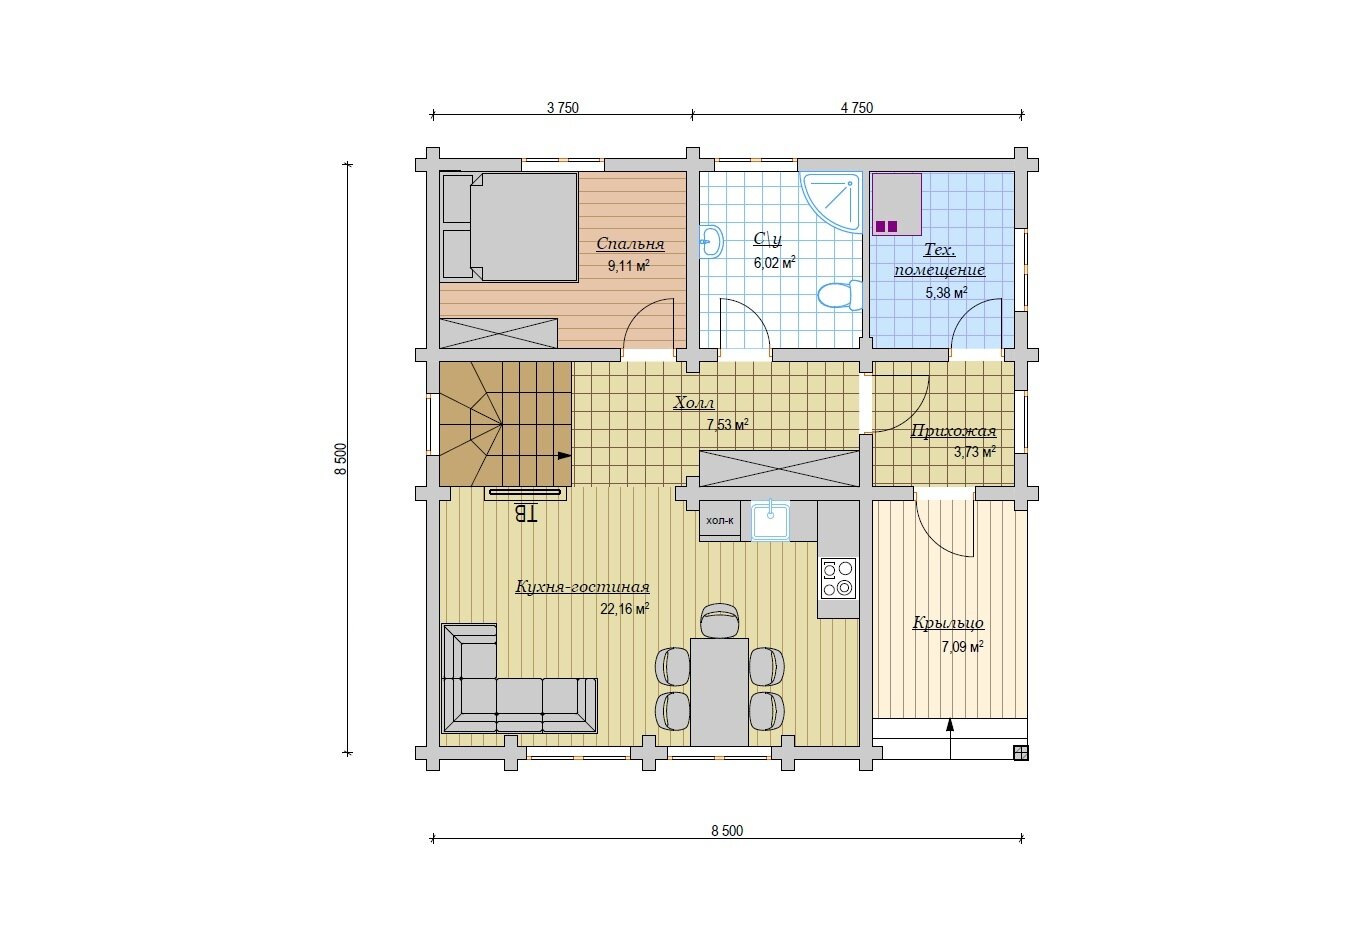 Проект двухэтажного дома 110 м2, с 4 спальнями, балконом, террасой и кухней-гостиной - фотография № 3